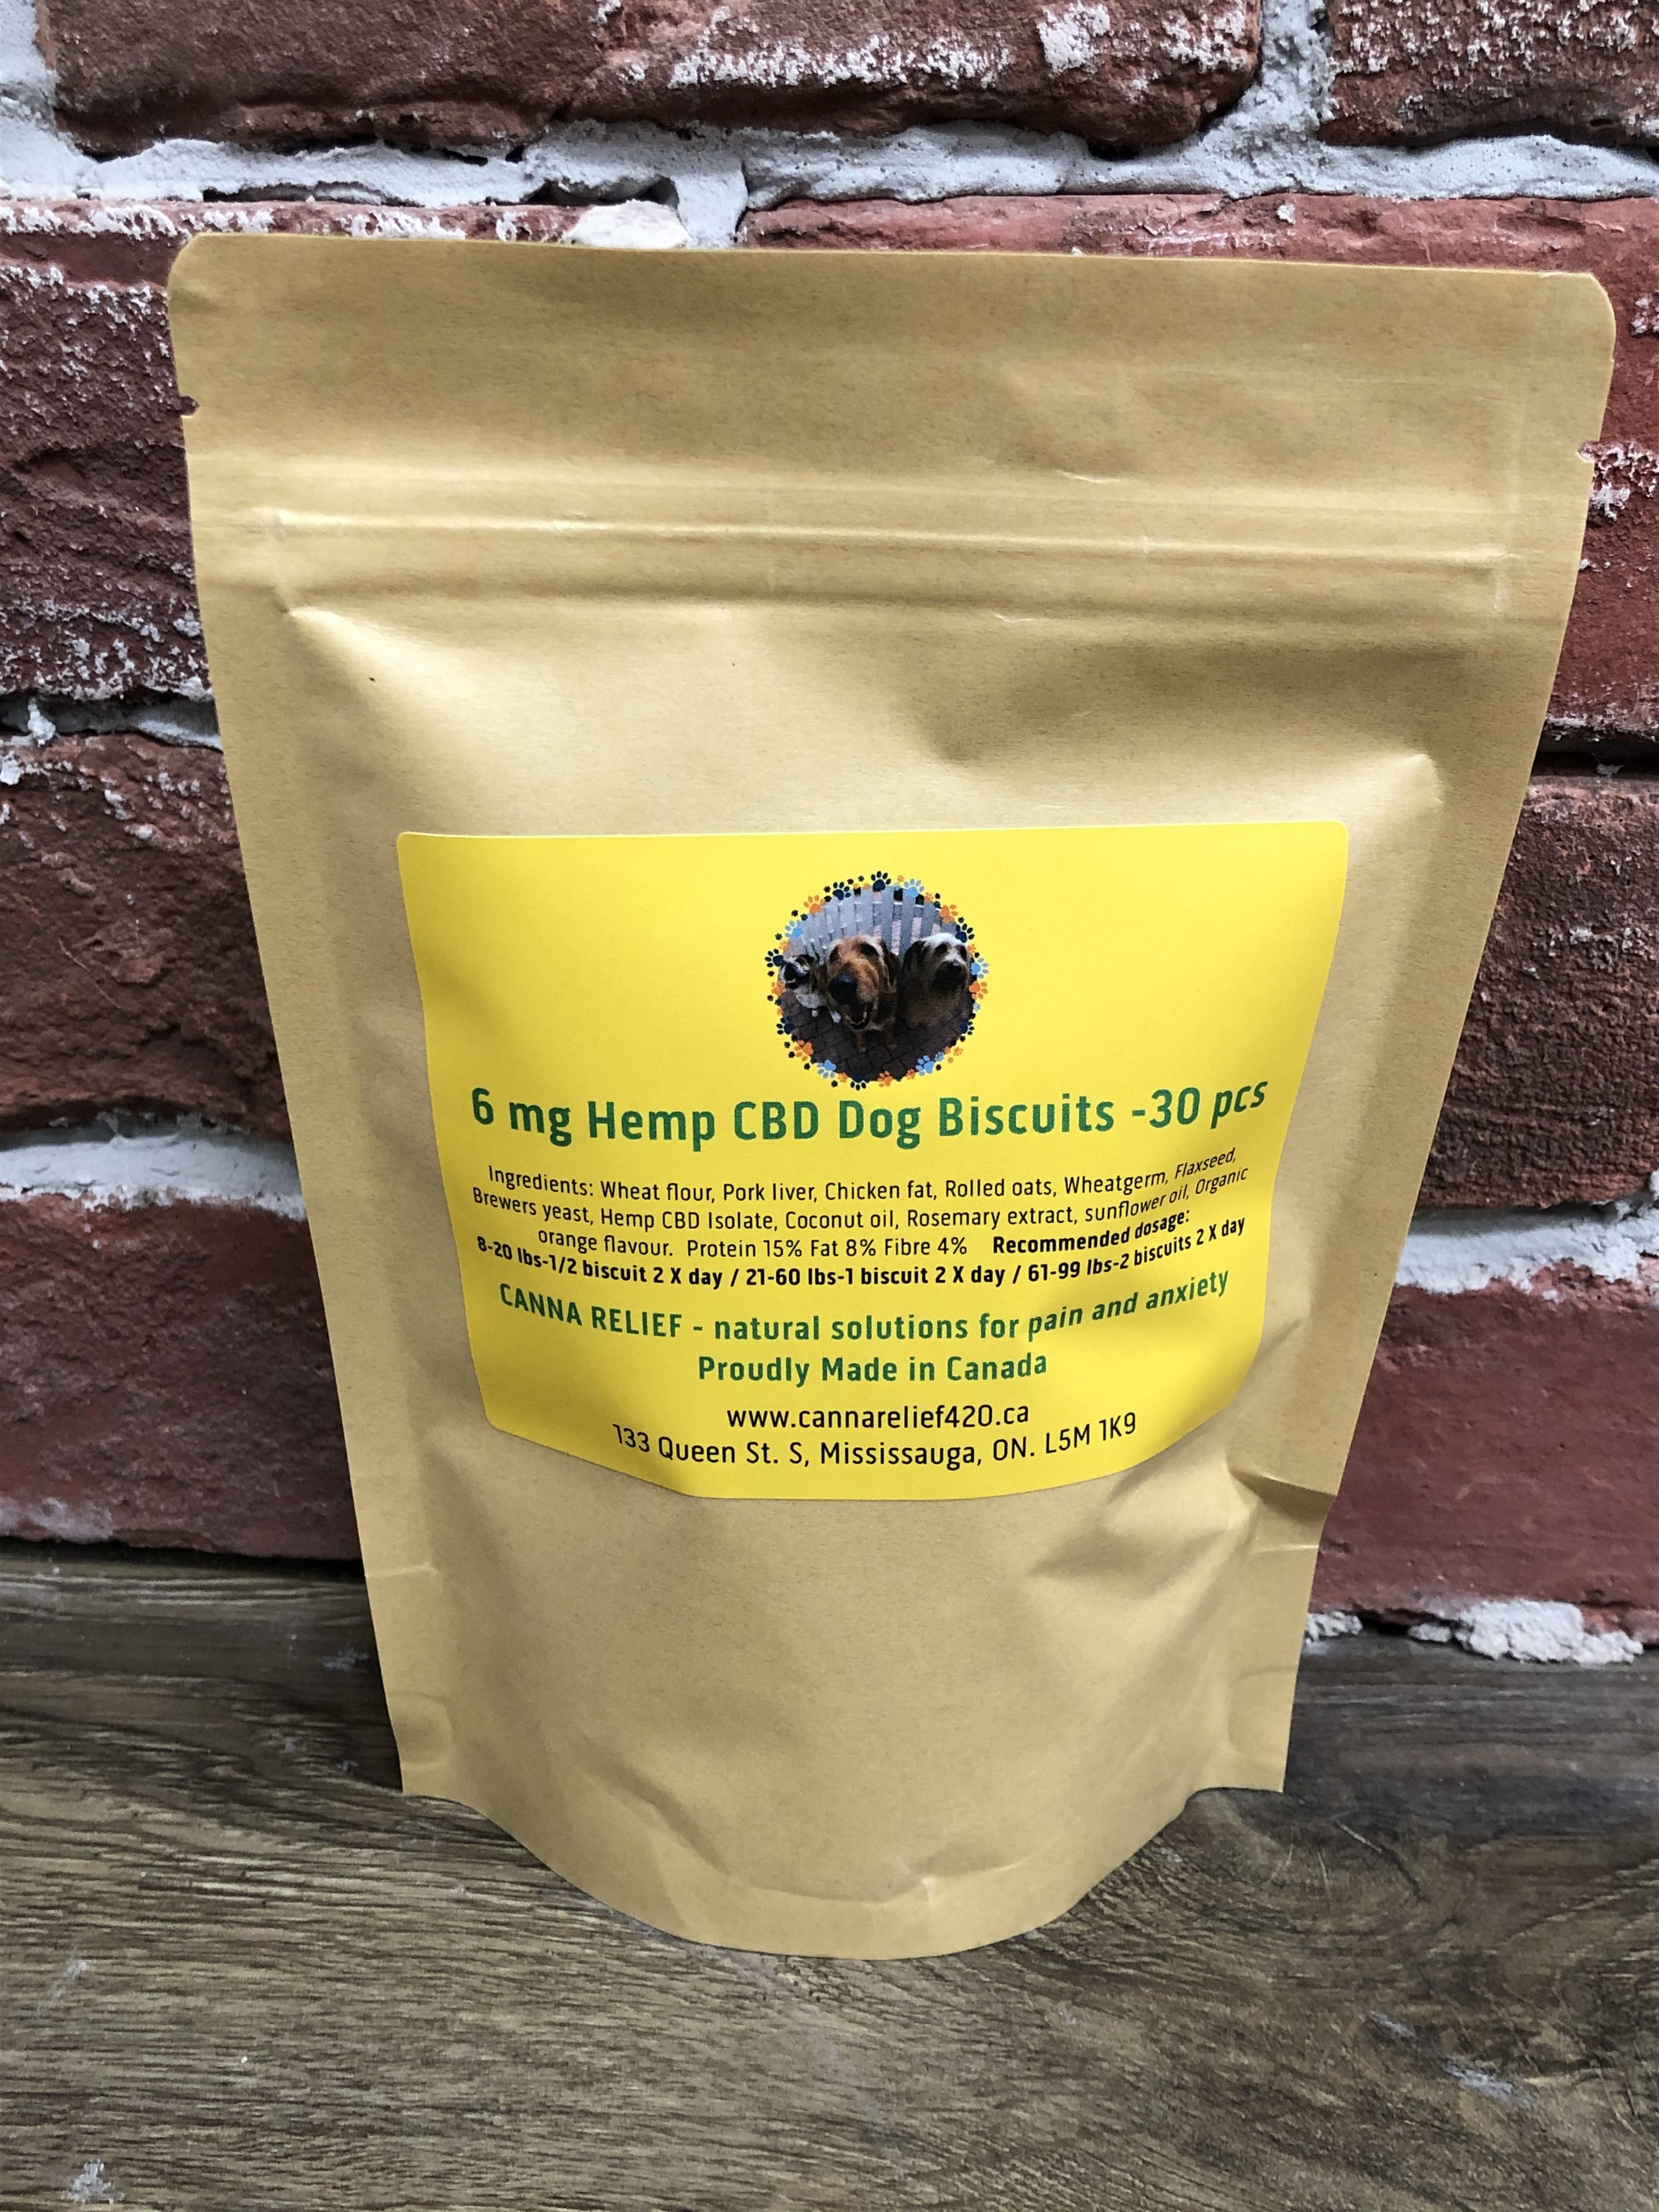 CANNA RELIEF Liver/Hemp CBD dog biscuits 6mg per biscuit – 30 pcs